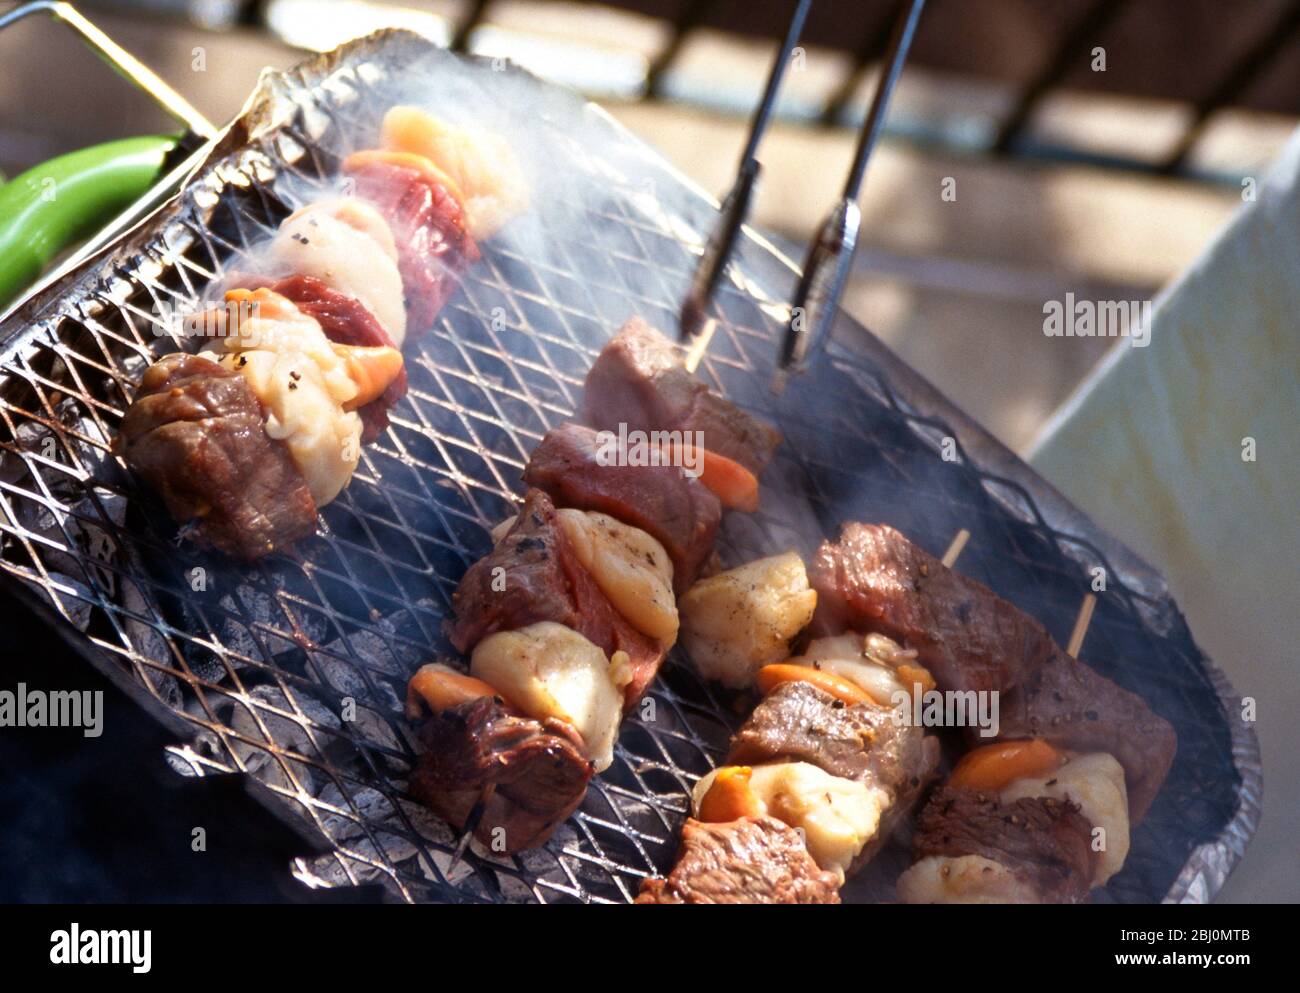 Grillen von Jakobsmuscheln und Steak-Kebabs auf einem Holzkohlegrill - Stockfoto